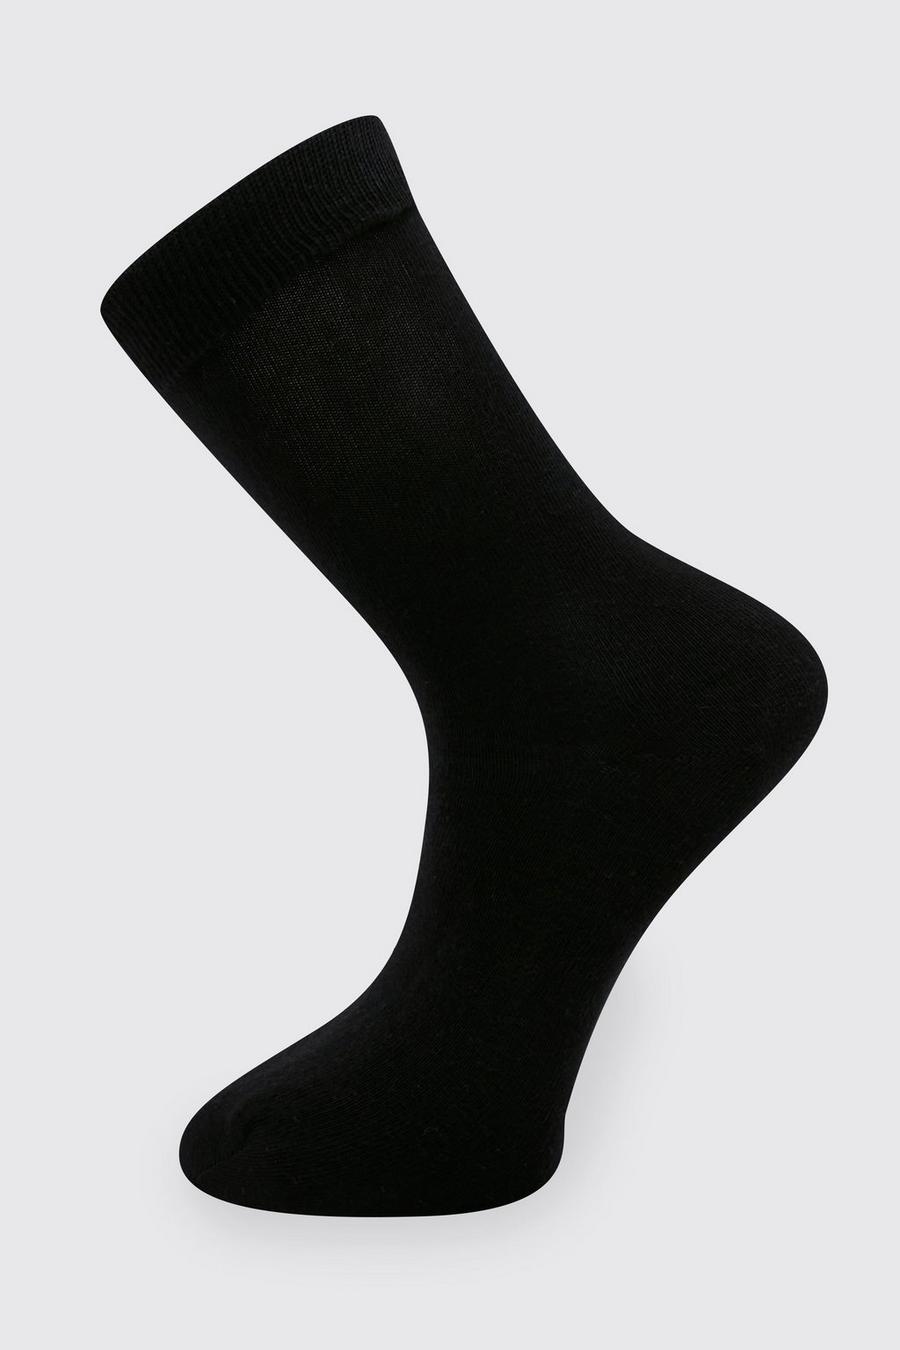 Black Nette Sokken (5 Paar)